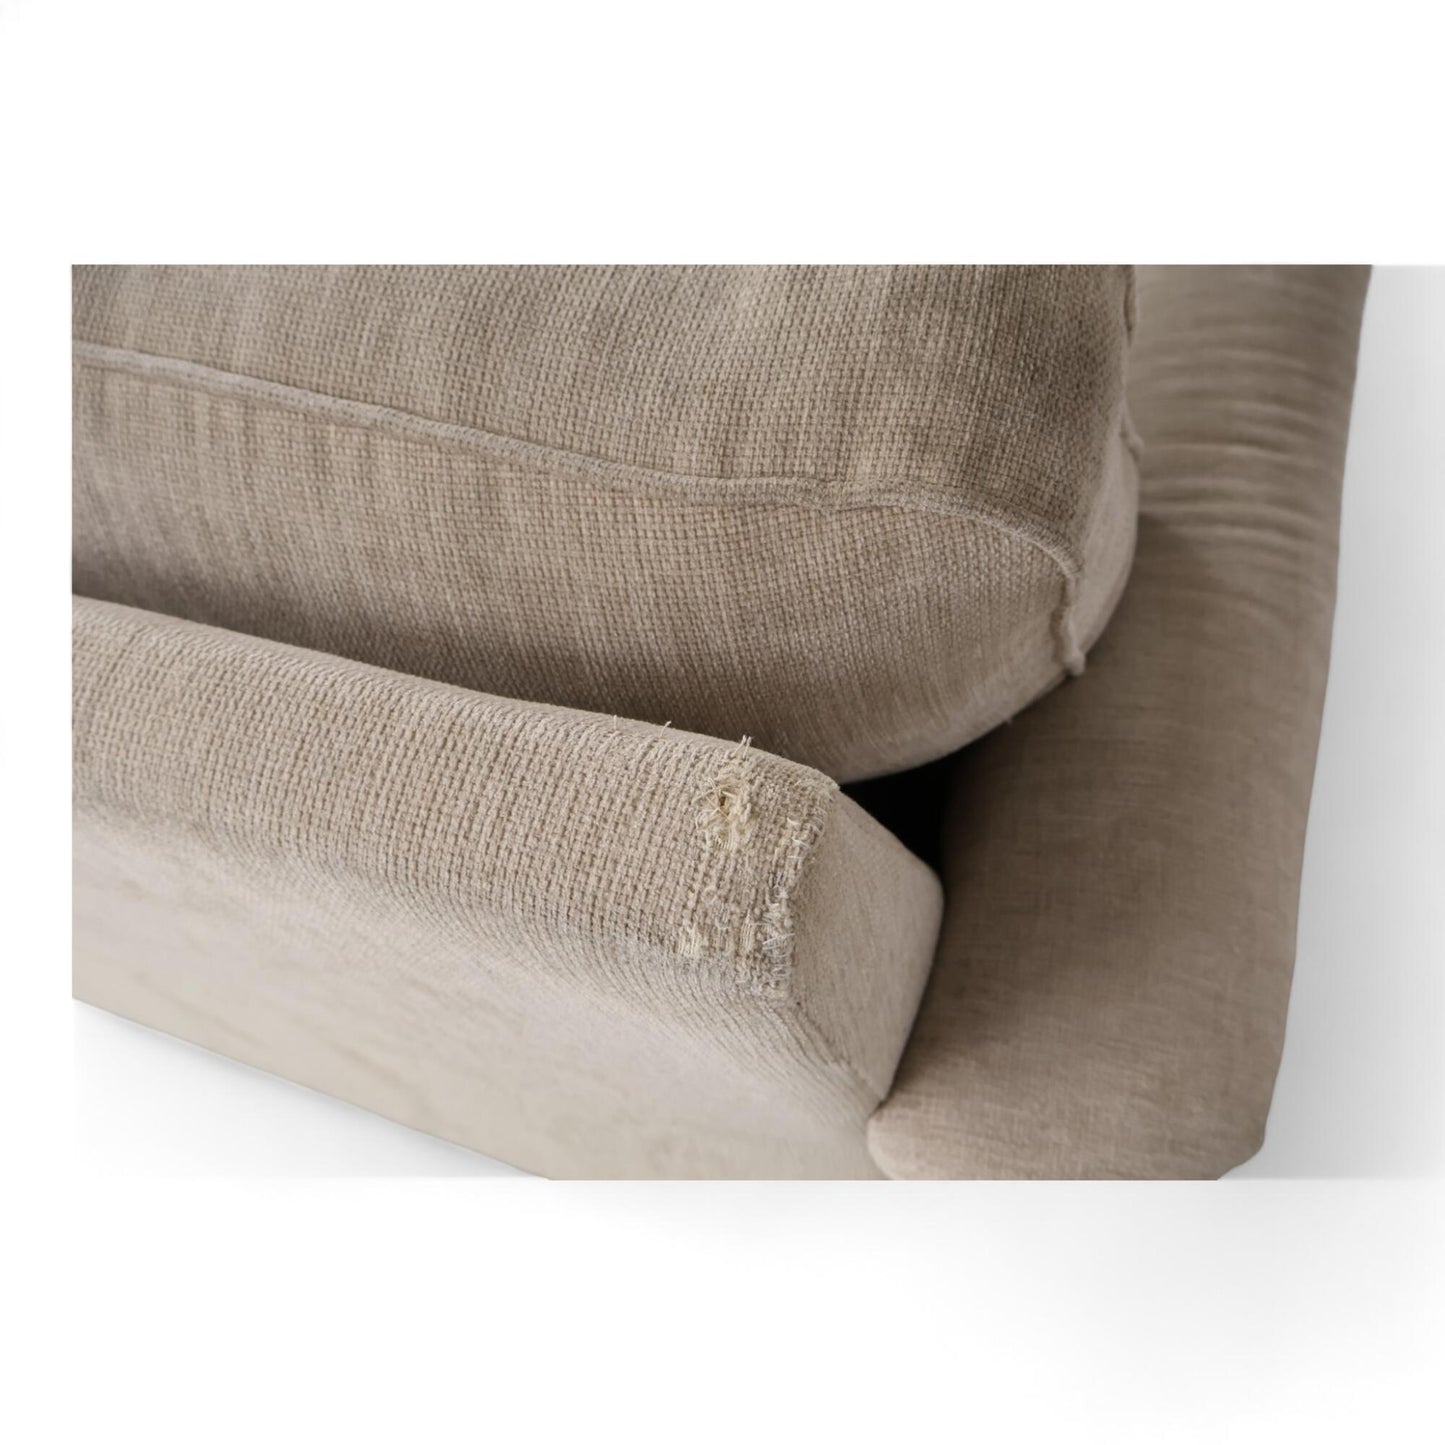 Nyrenset | Sits Howard 3-seter sofa